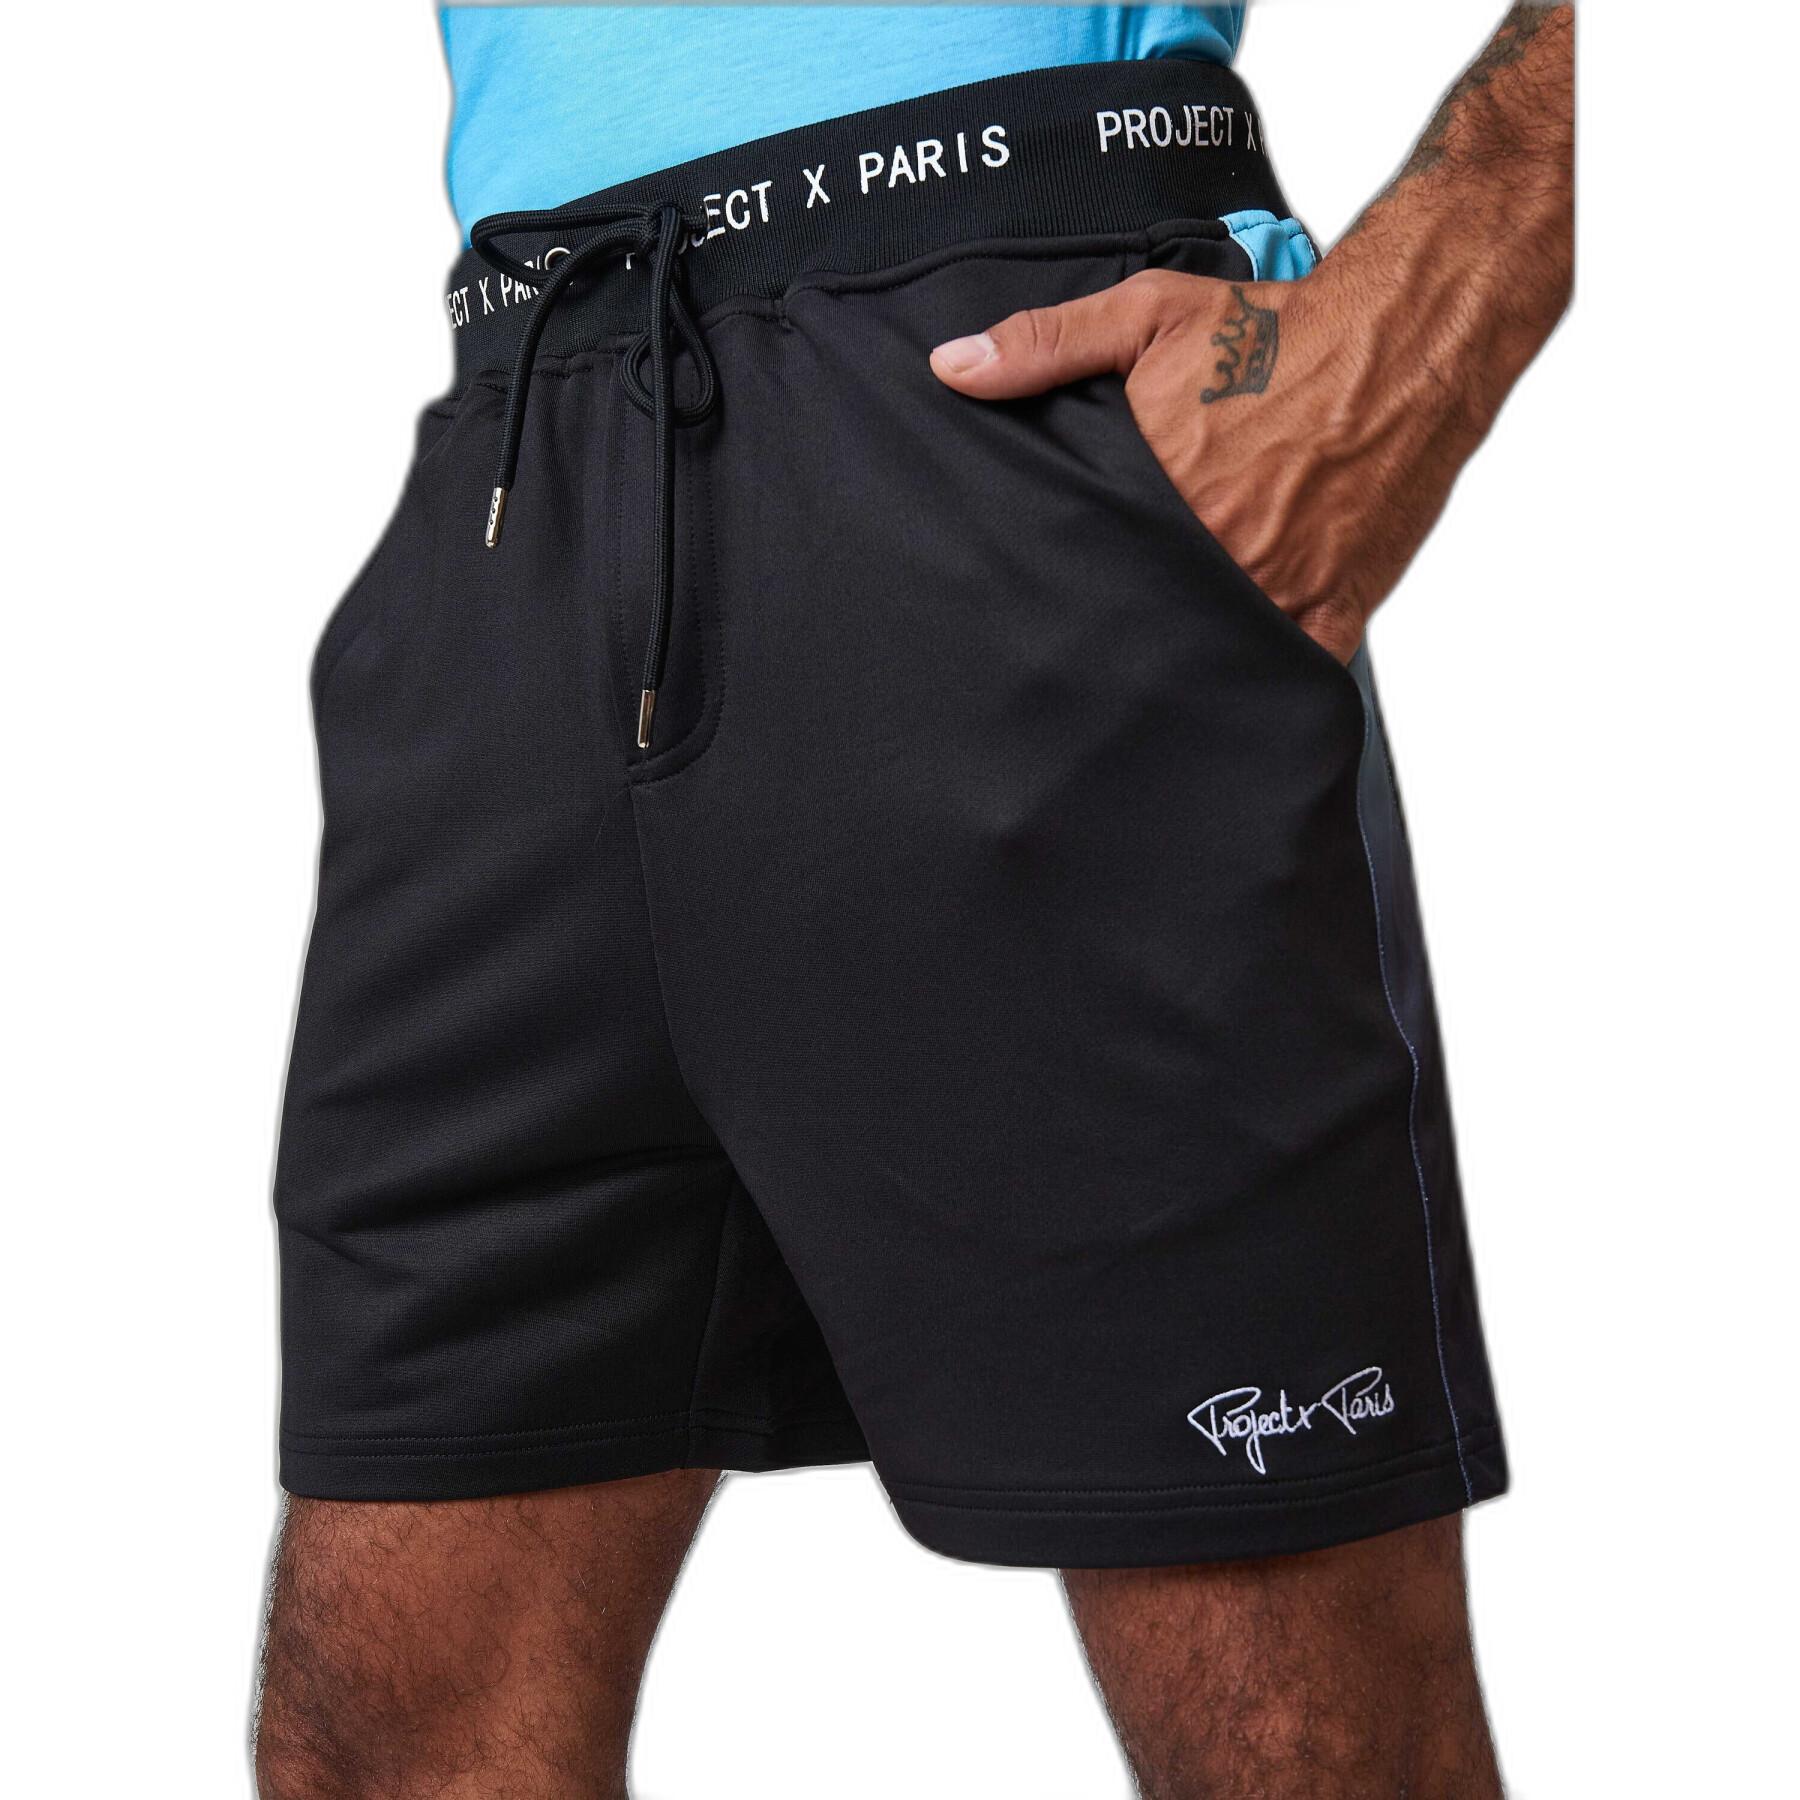 Pantalón corto estampados a rayas Project X Paris